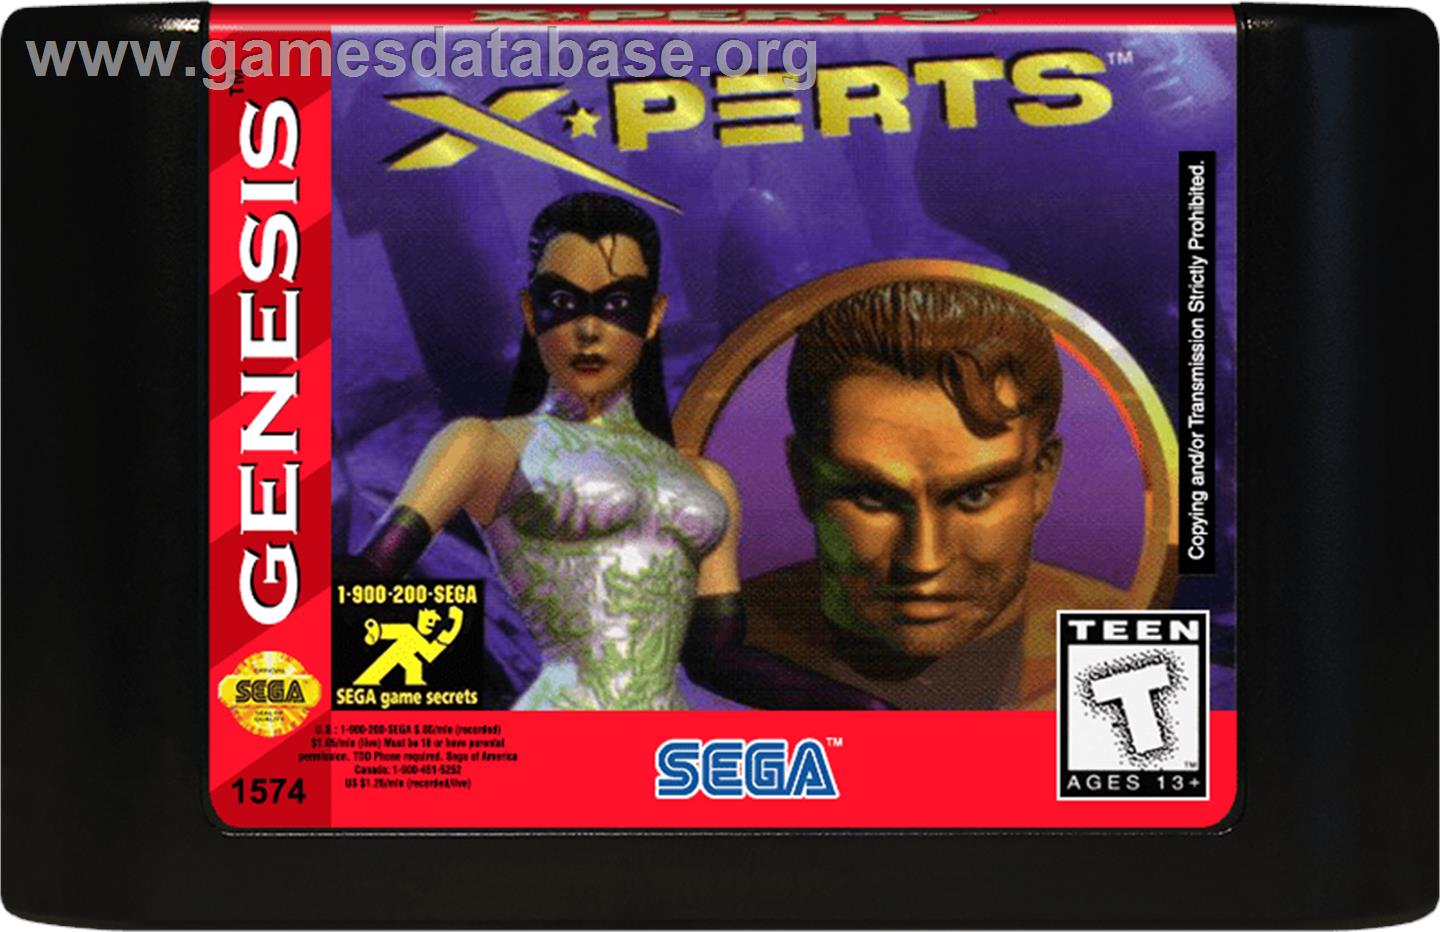 X-Perts - Sega Genesis - Artwork - Cartridge